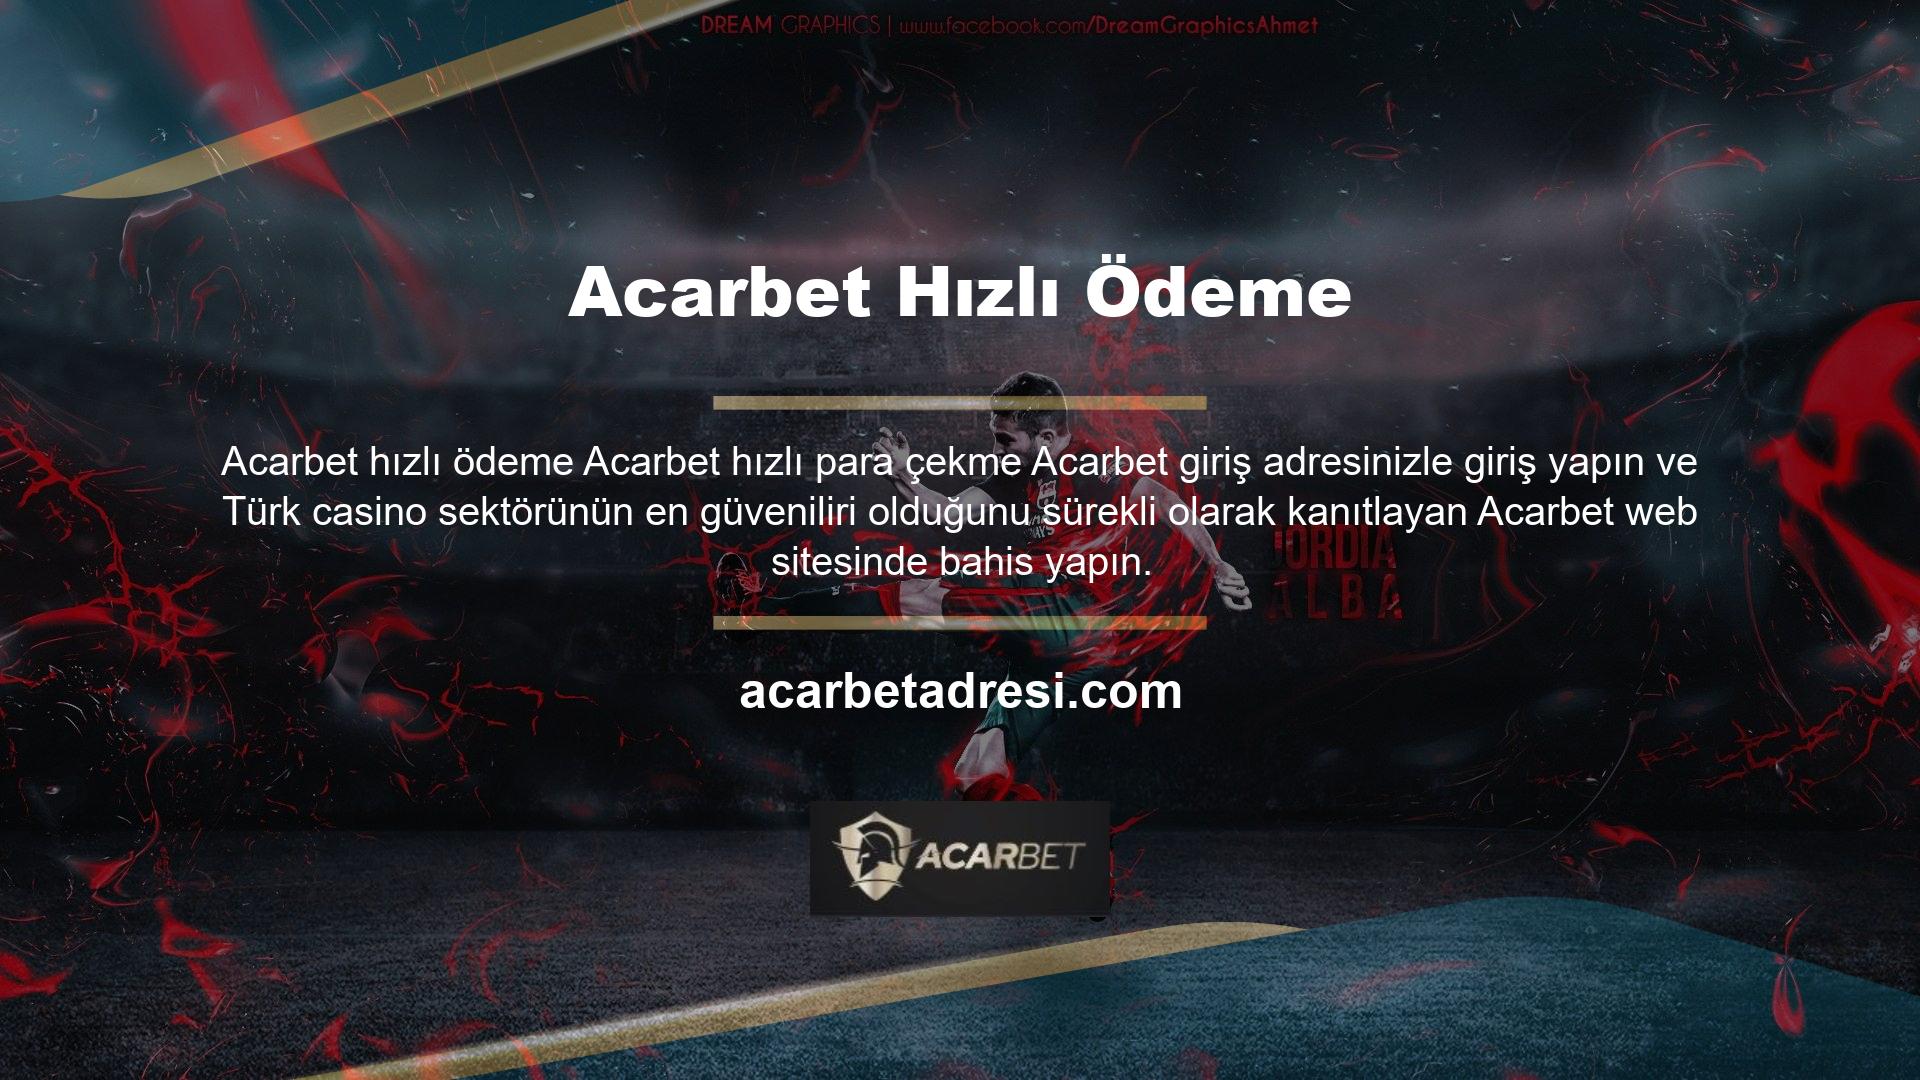 Çevrimiçi casino sektörünün en güvenilir sitesi olan Acarbet, oranlarını güncelleyerek büyük paralar kazanmaya başladı